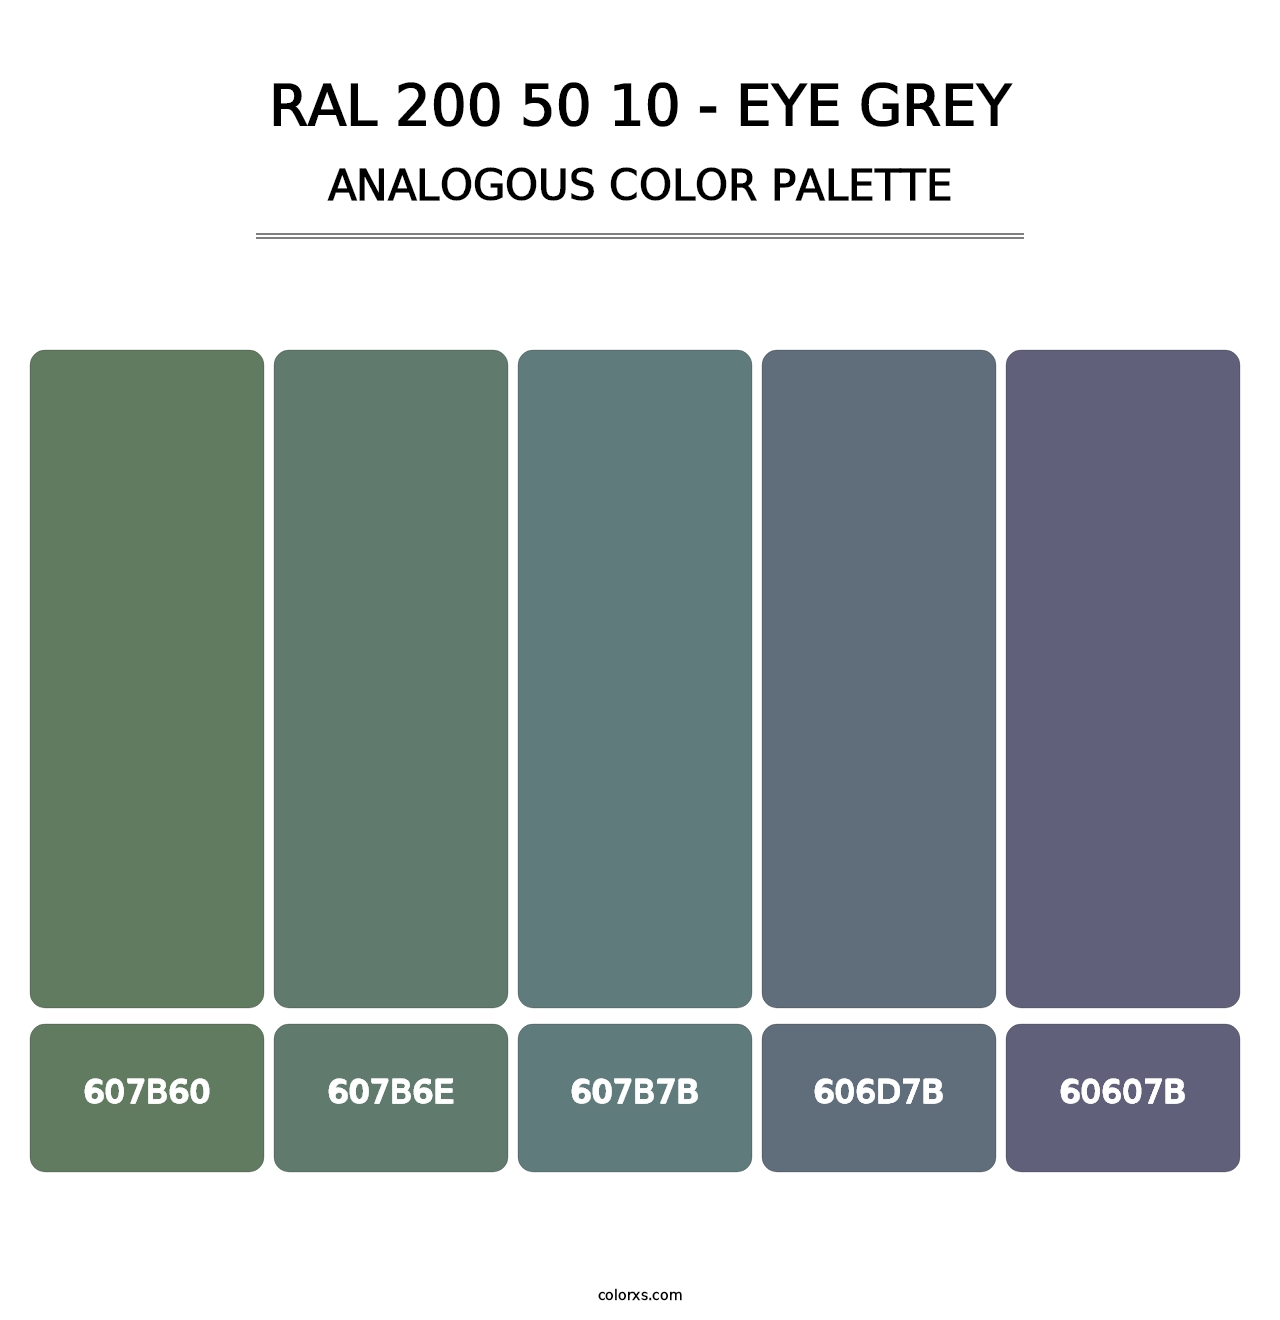 RAL 200 50 10 - Eye Grey - Analogous Color Palette